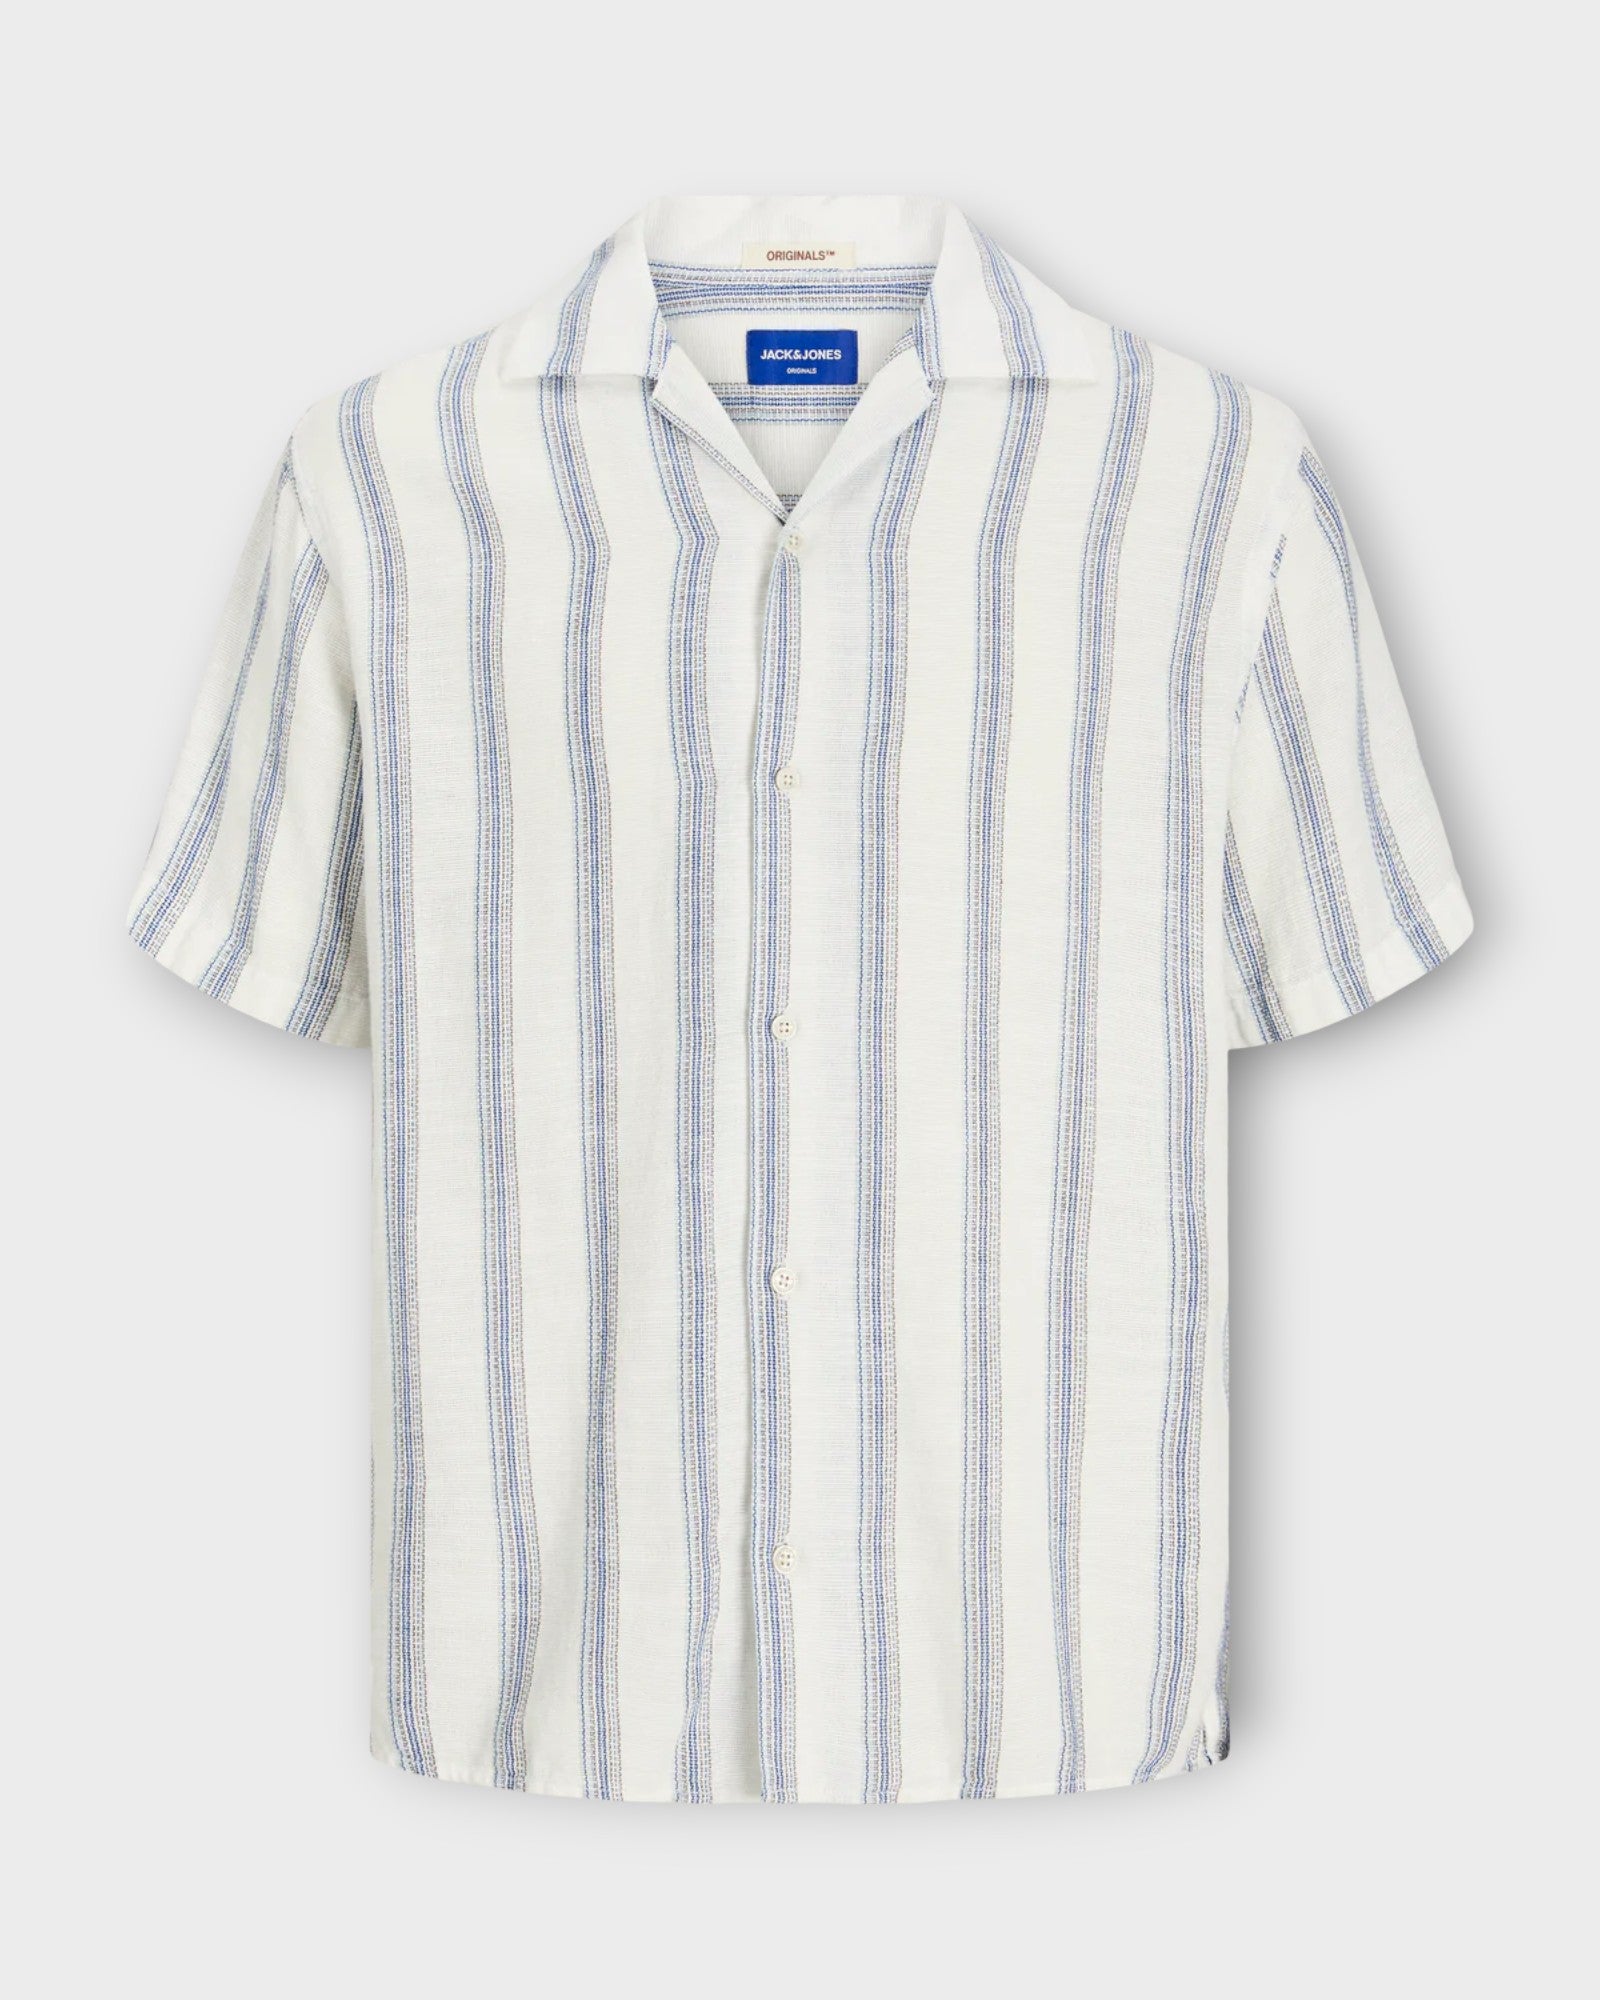 Jack and Jones Noto Stripe Resort Shirt Cloud Dancer, kortærmet blå stribet hørskjorte med Cubakrave. Her set forfra.